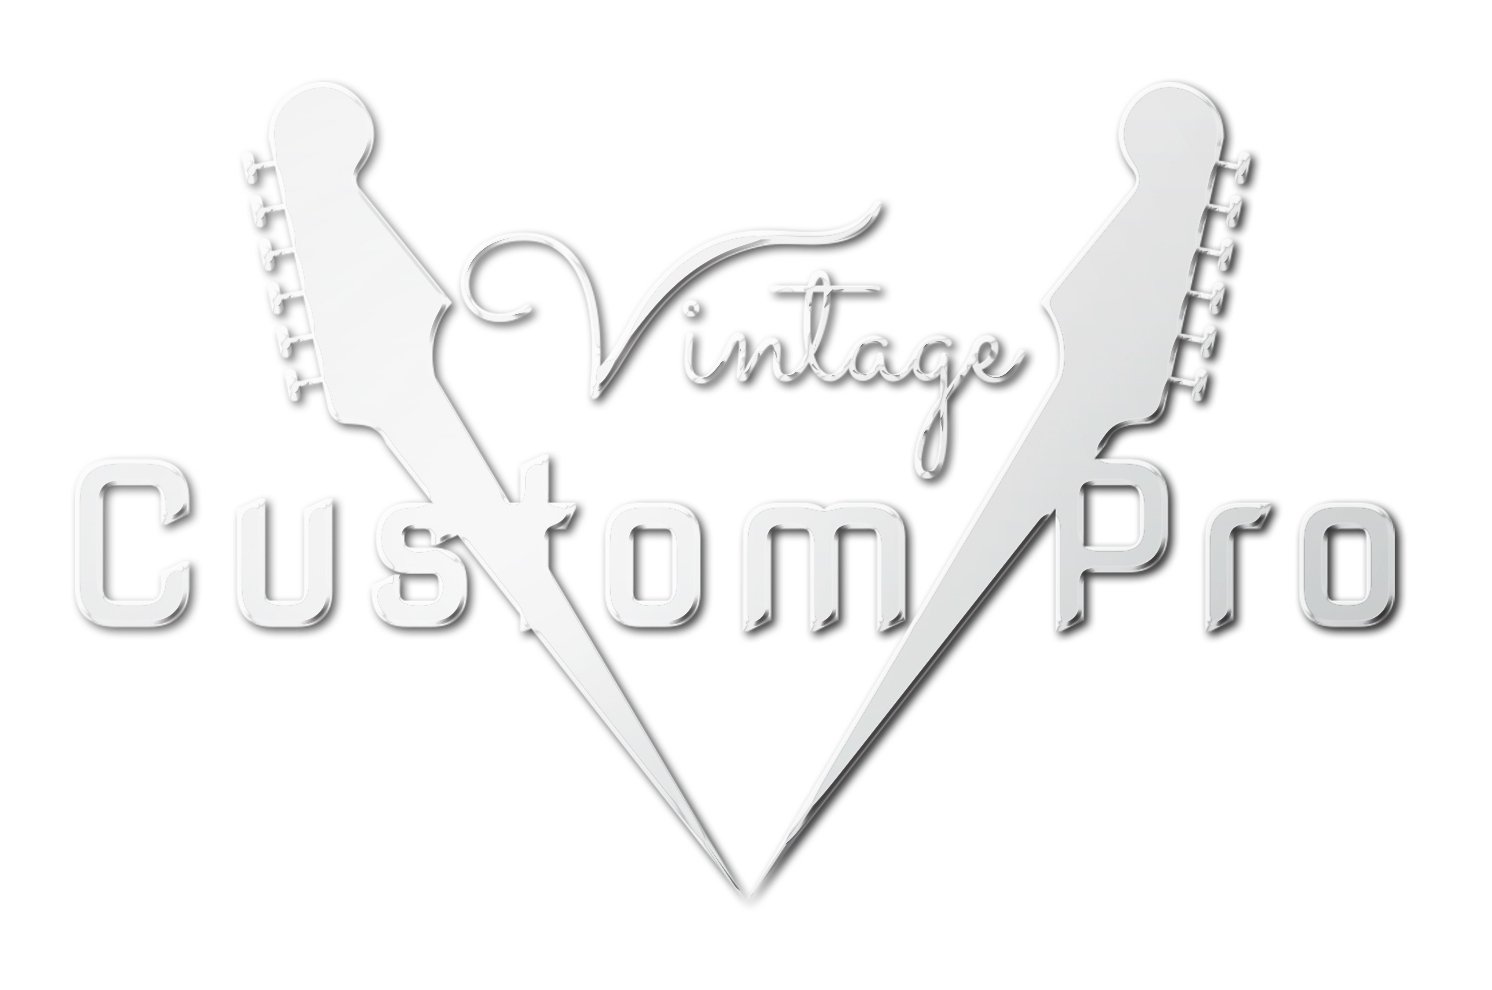 Vintage* V6LB Electric Guitar, Electric Guitar for sale at Richards Guitars.